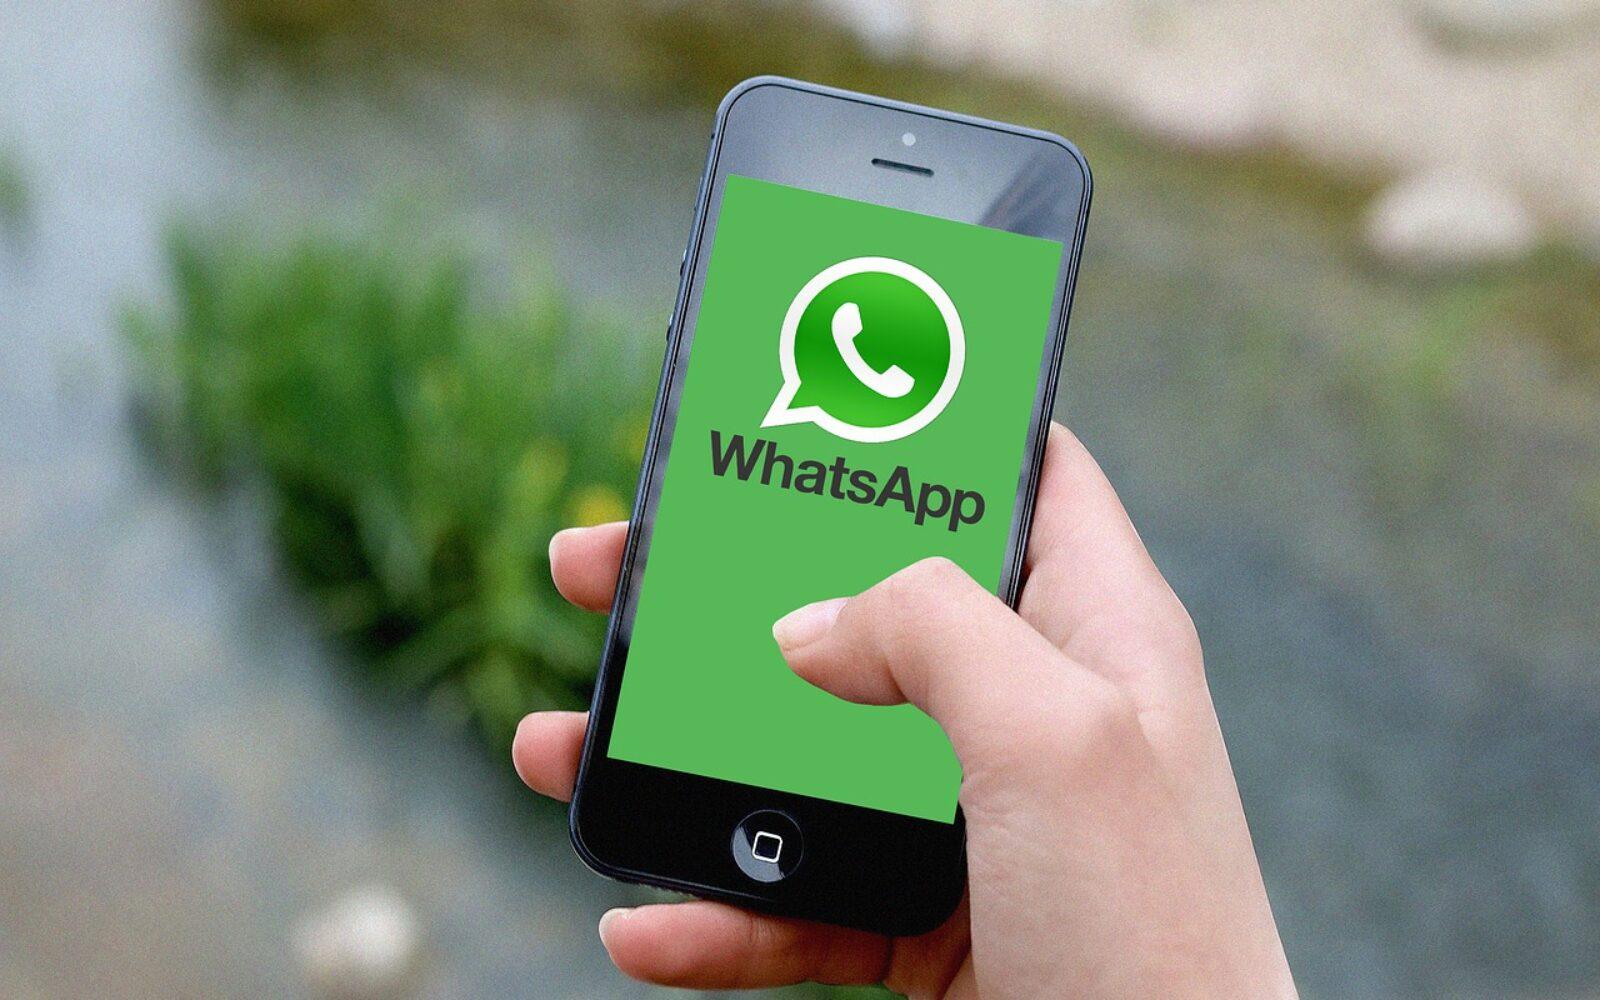 WhatsApp: Ovi mobiteli nemaju najnovija bezbjednosna ažuriranja ili možda nemaju funkcionalnost potrebnu za pokretanje aplikacije - Avaz